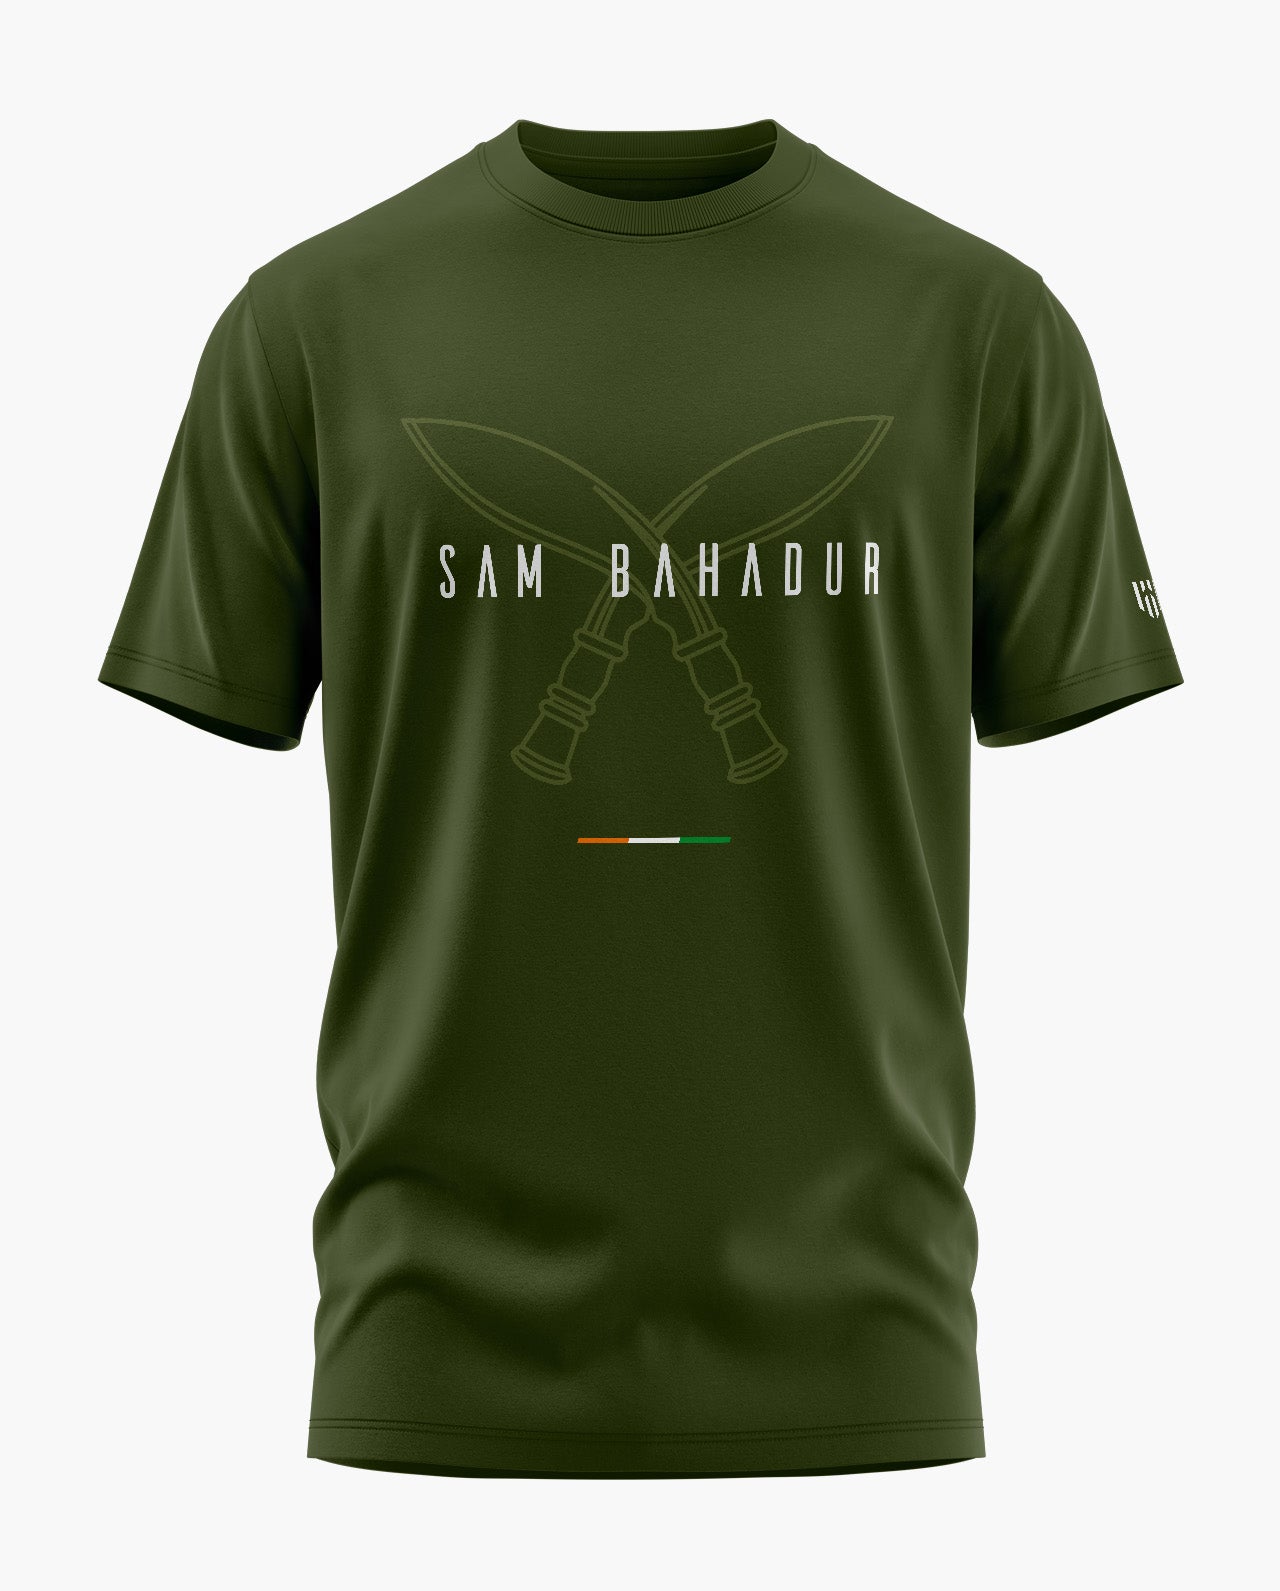 SAM BAHADUR GORKHA T-Shirt